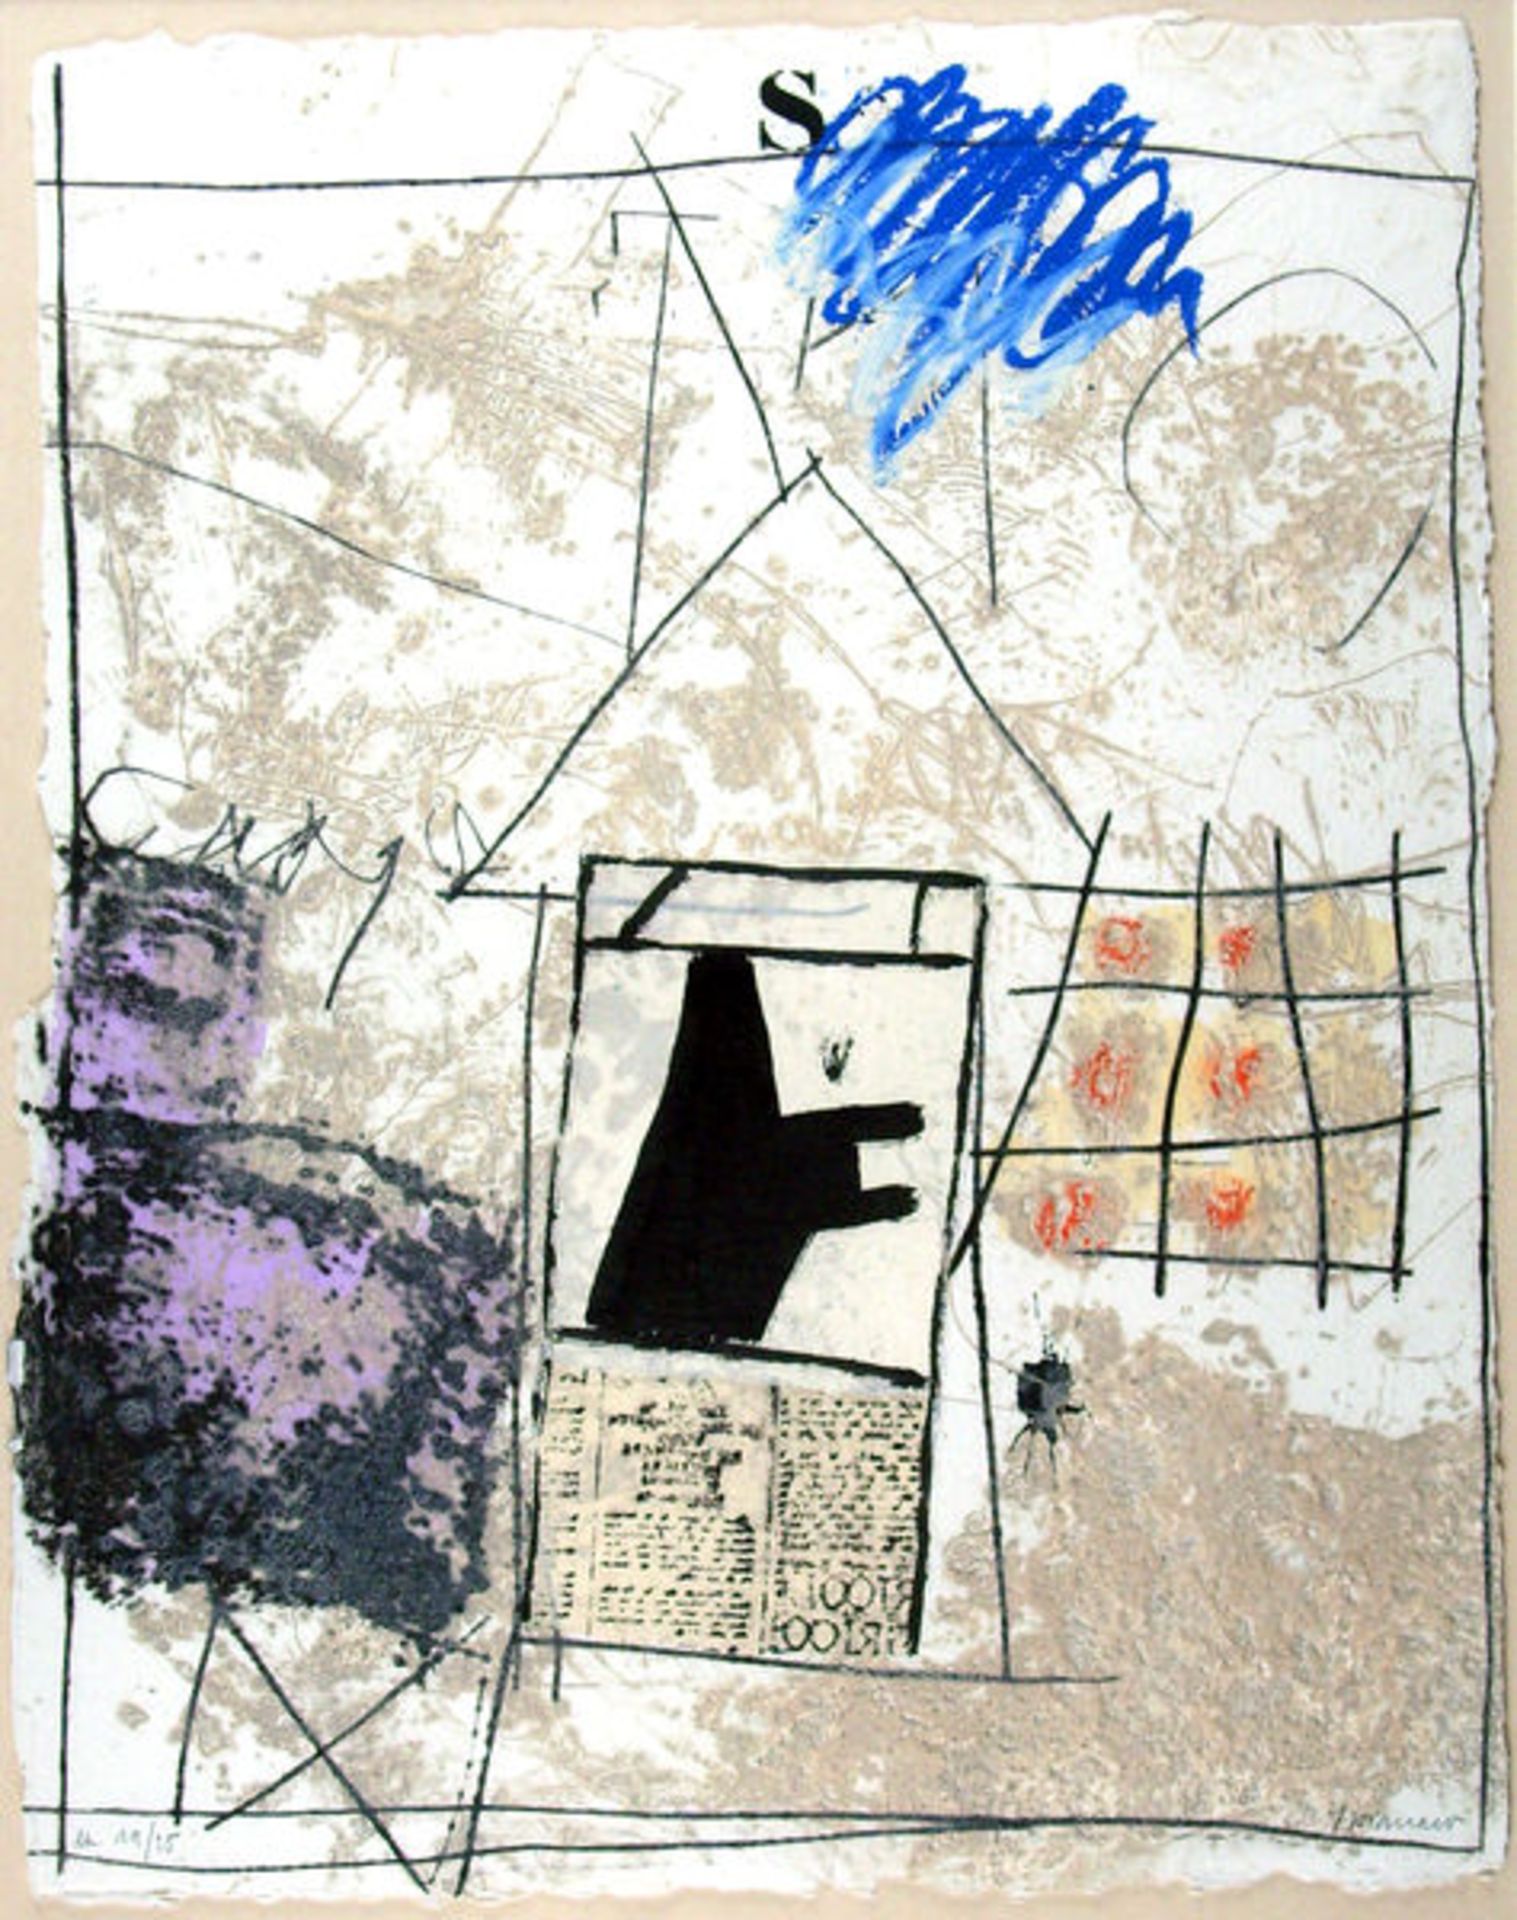 Coignard, James Radierung mit Carborundum auf Moulin de Larroque Bütten, 58 x 46 cm Vie (1992)